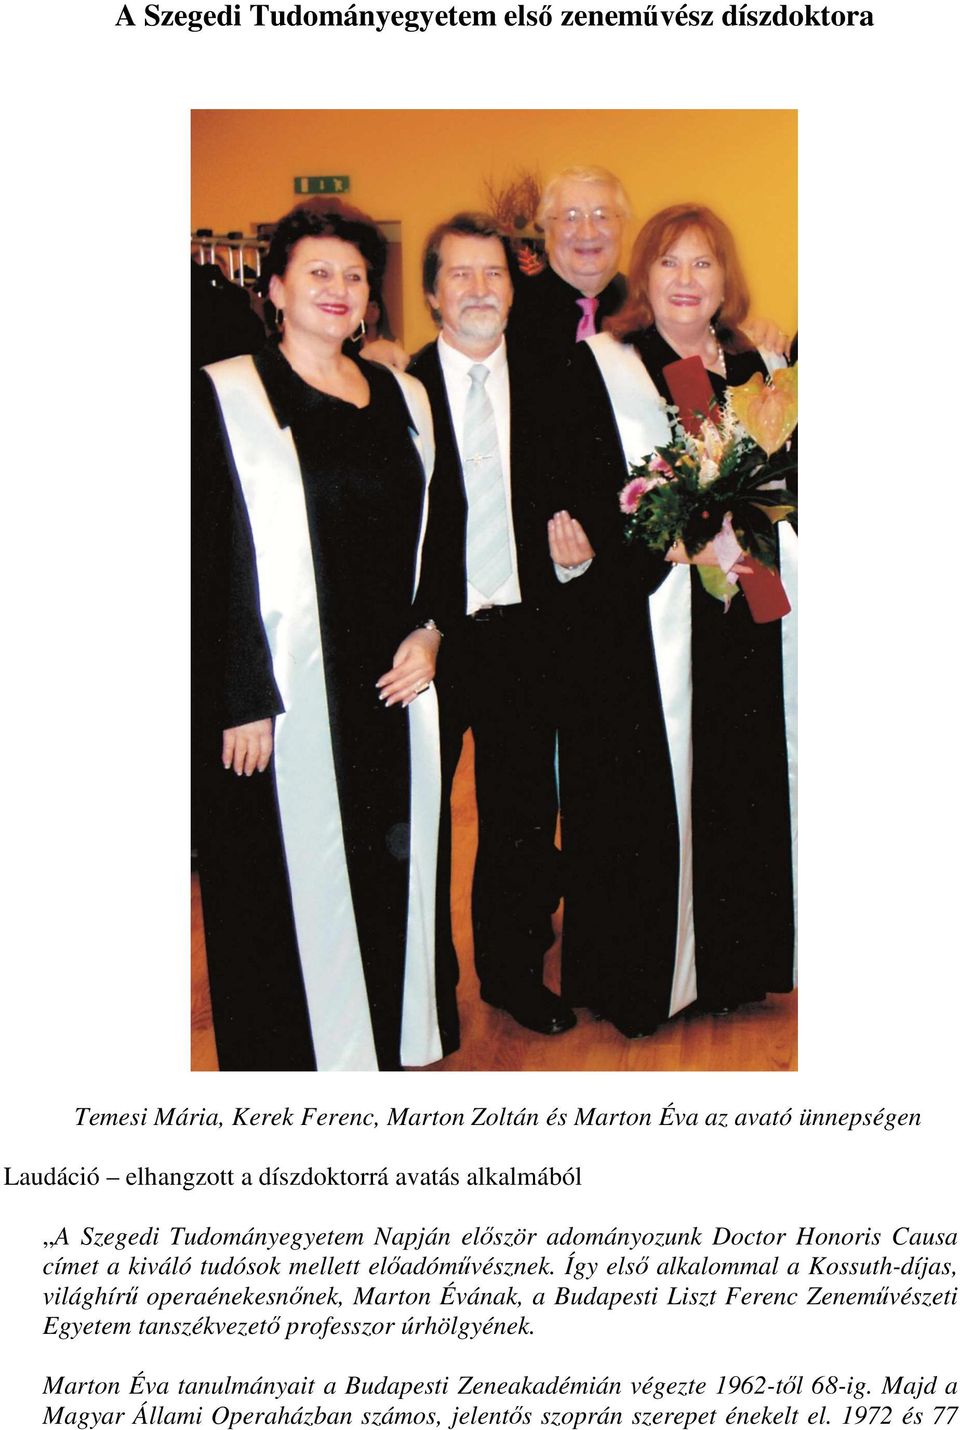 Így első alkalommal a Kossuth-díjas, világhírű operaénekesnőnek, Marton Évának, a Budapesti Liszt Ferenc Zeneművészeti Egyetem tanszékvezető professzor